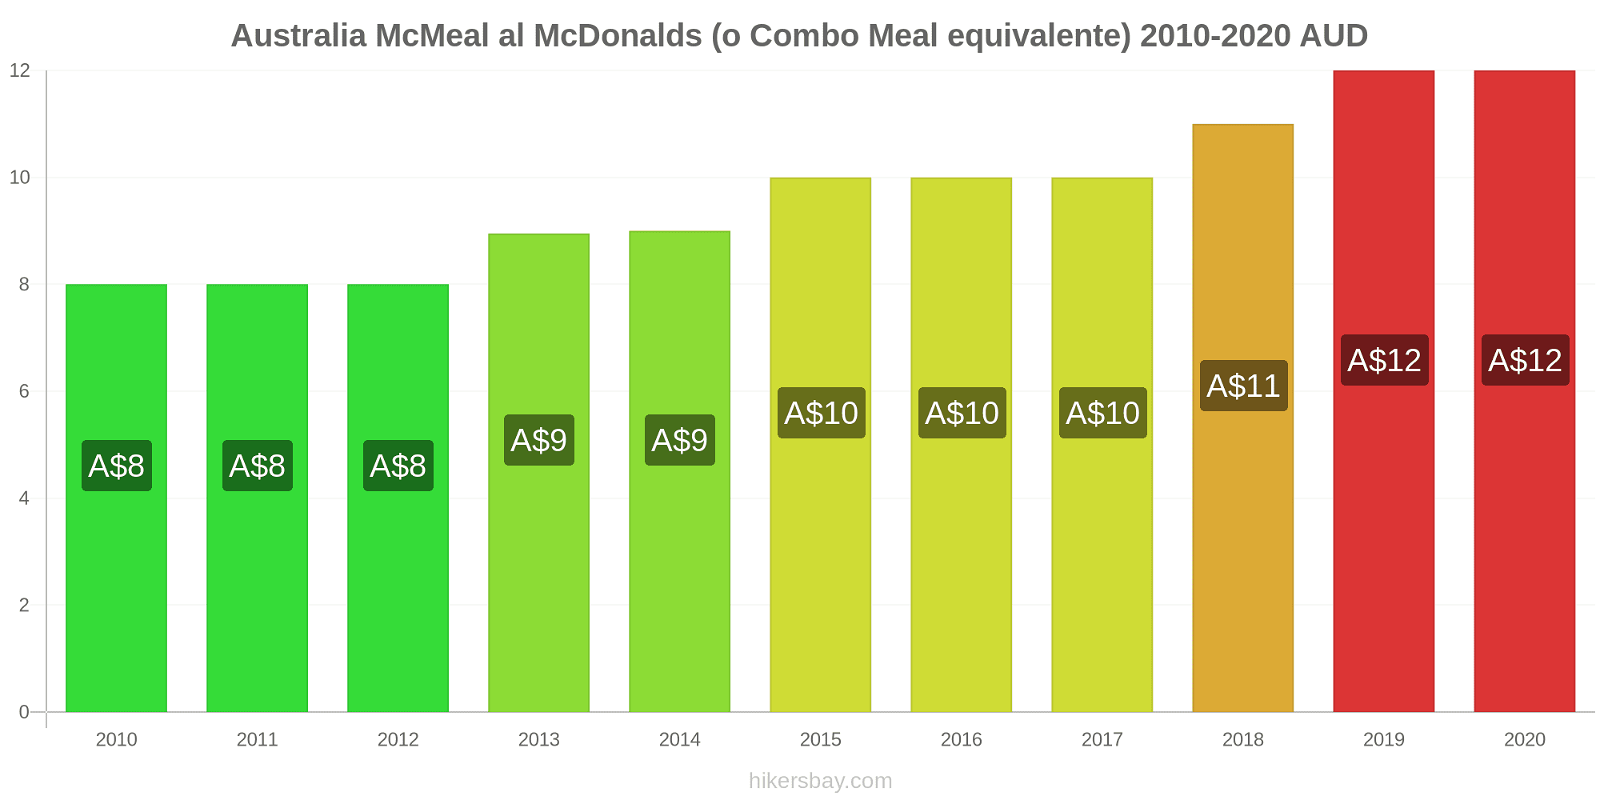 Australia variazioni di prezzo McMeal al McDonalds (o in un equivalente fastfood) hikersbay.com